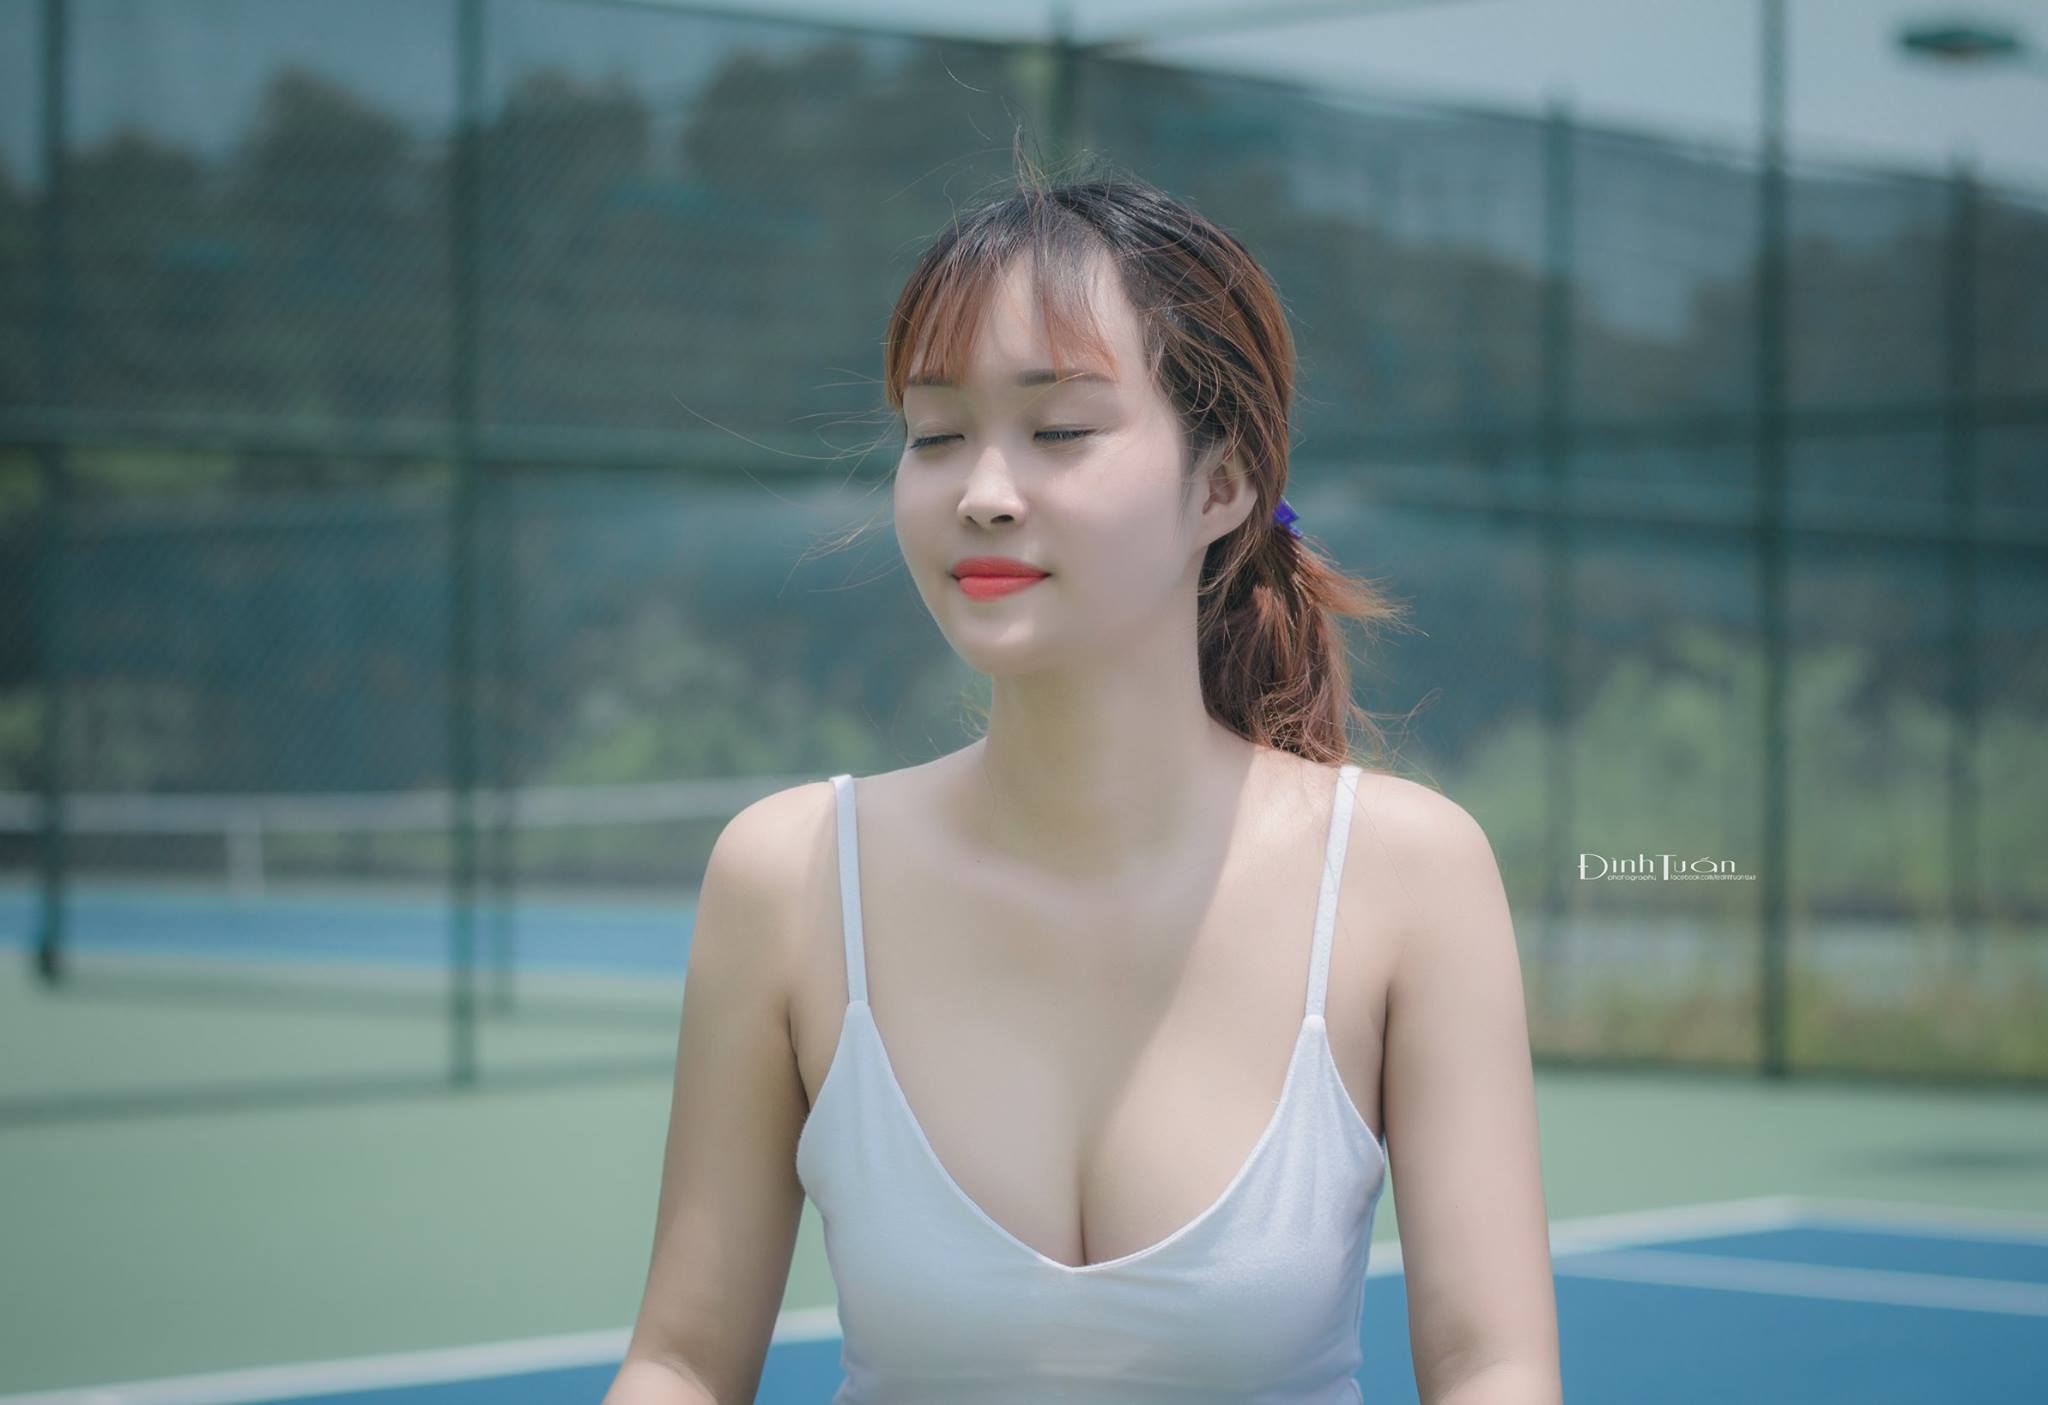 LDTPhotos | Le Dinh Tuan - @ledinhtuan Tennis-1-3 Trang chủ  